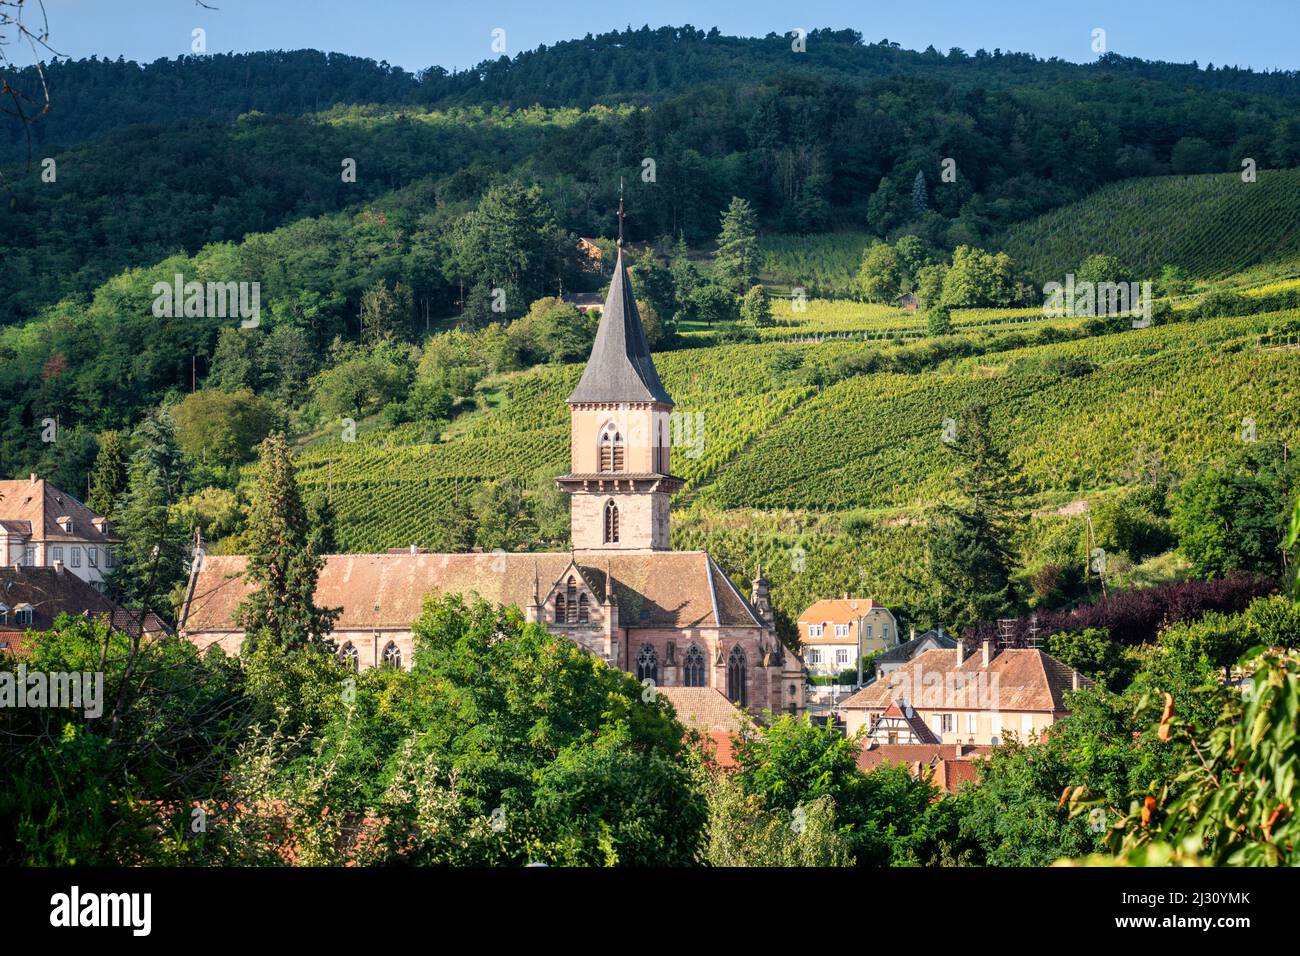 Blick auf die Weinberge und die Kirche Saint Grégoire in Ribeauville, Elsass, Frankreich, Europa Ribeauville, Departement Haut-Rhin, Grand Est Region, Elsaessische Weinstrasse, Elsass, Frankreich Stockfoto